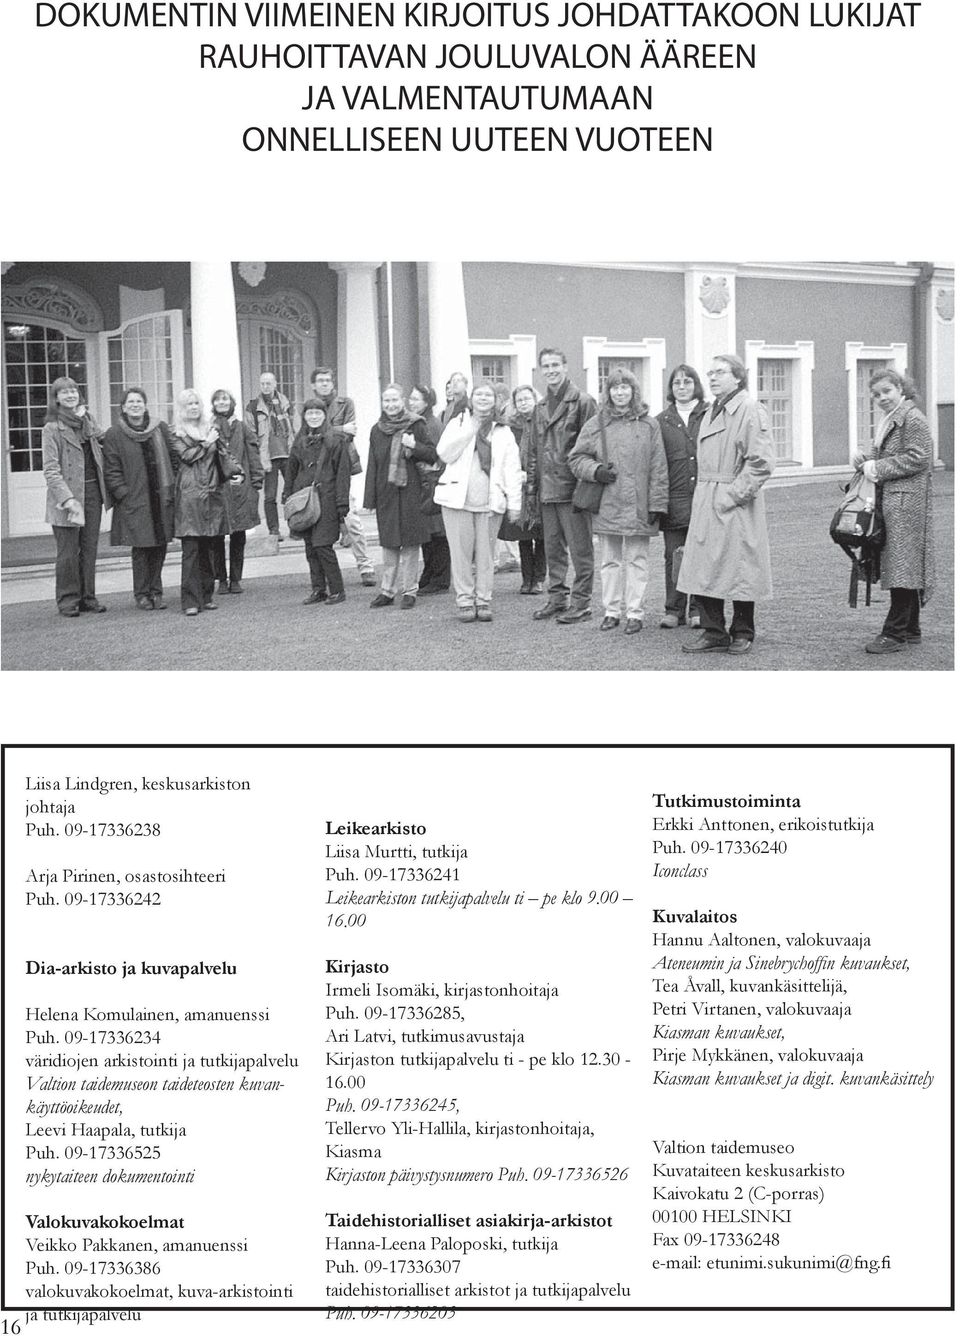 09-17336234 väridiojen arkistointi ja tutkijapalvelu Valtion taidemuseon taideteosten kuvankäyttöoikeudet, Leevi Haapala, tutkija Puh.